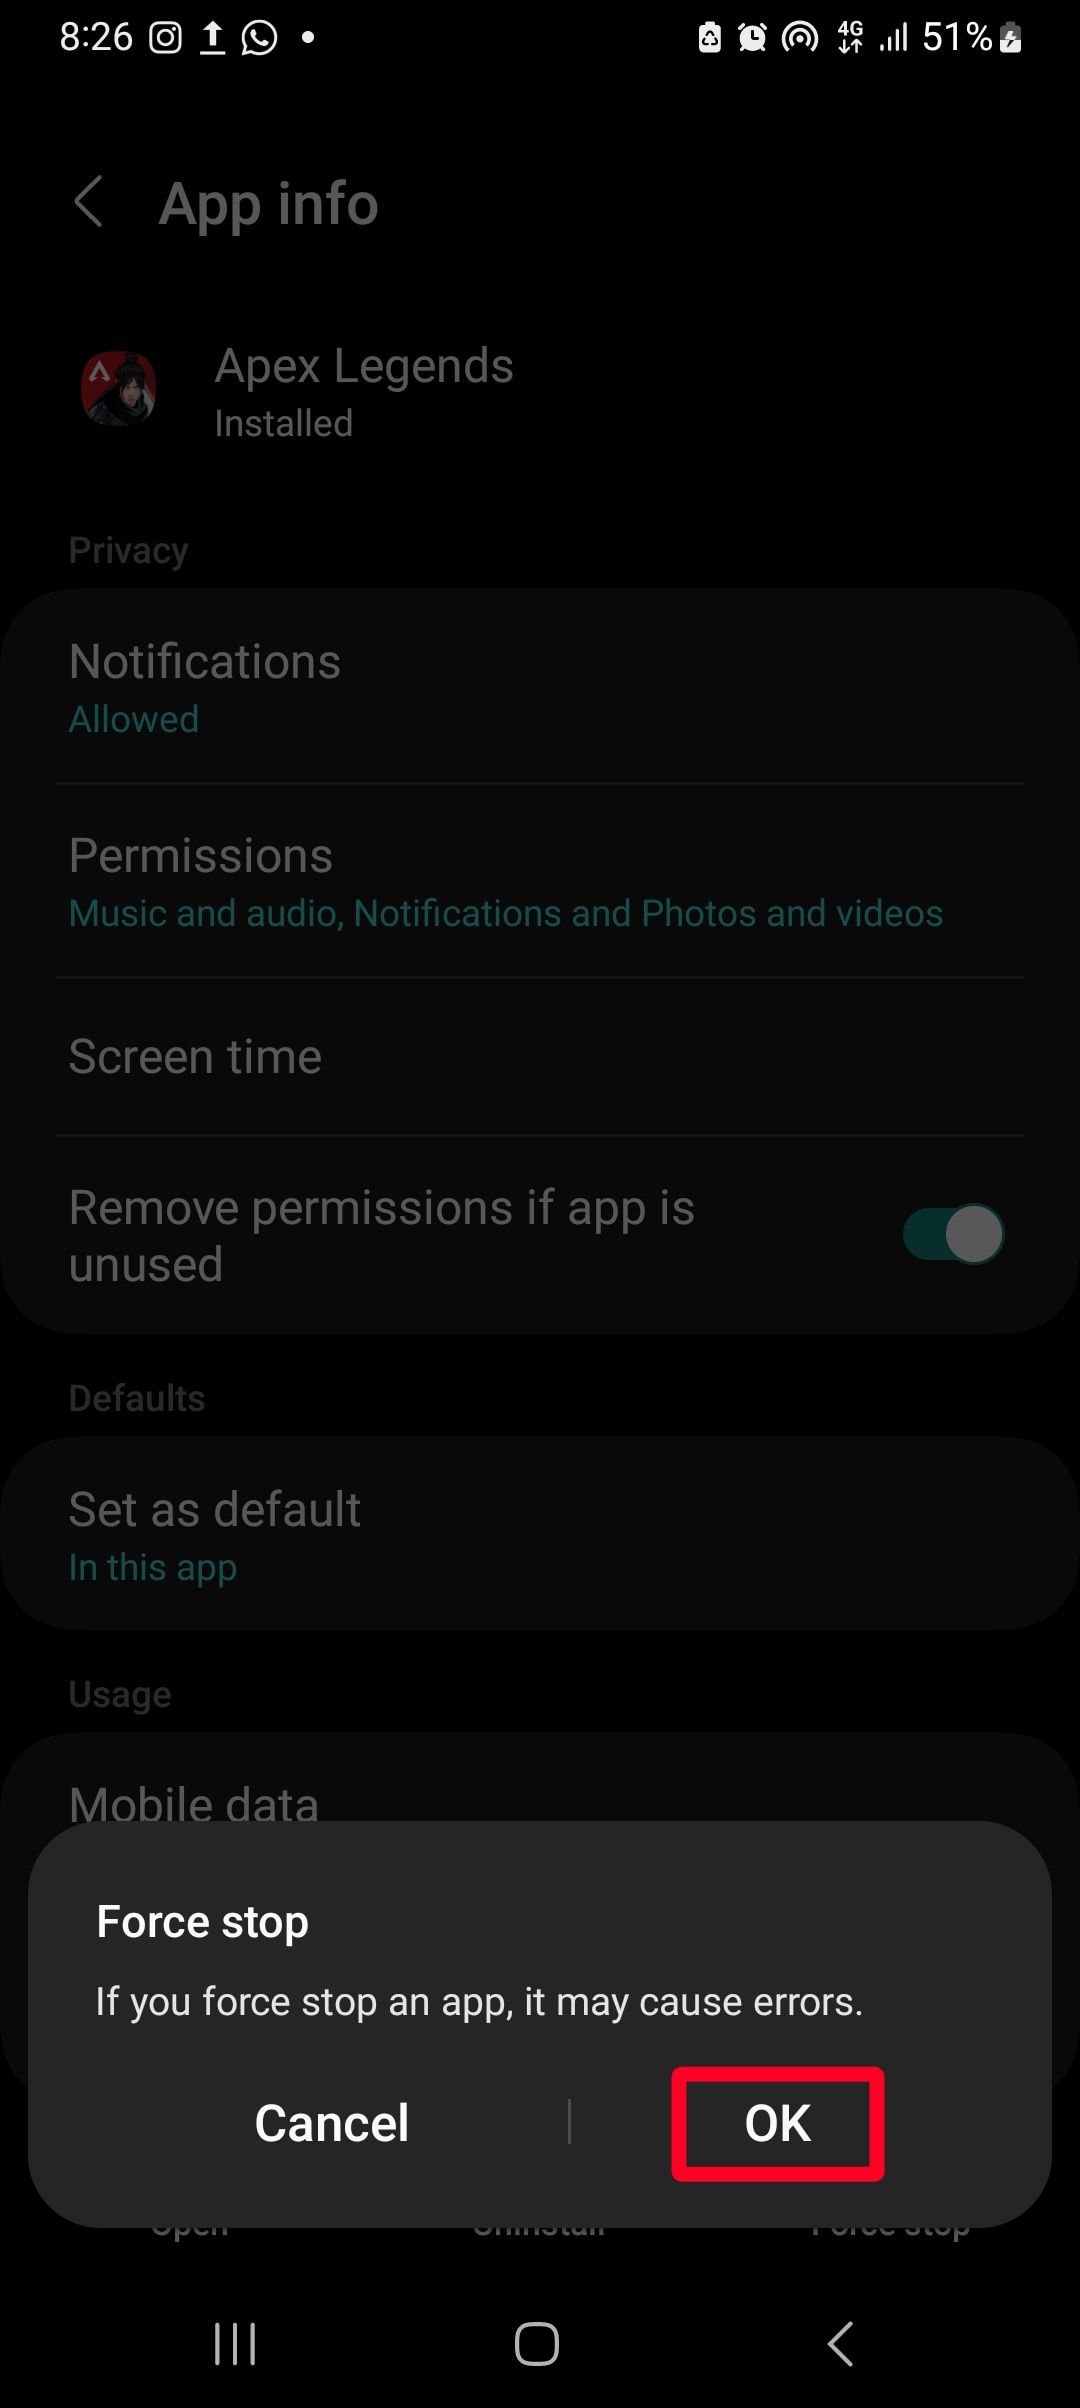 contorno de retângulo vermelho sobre a opção ok em vigor para interromper o aplicativo Apex Legends no smartphone Android